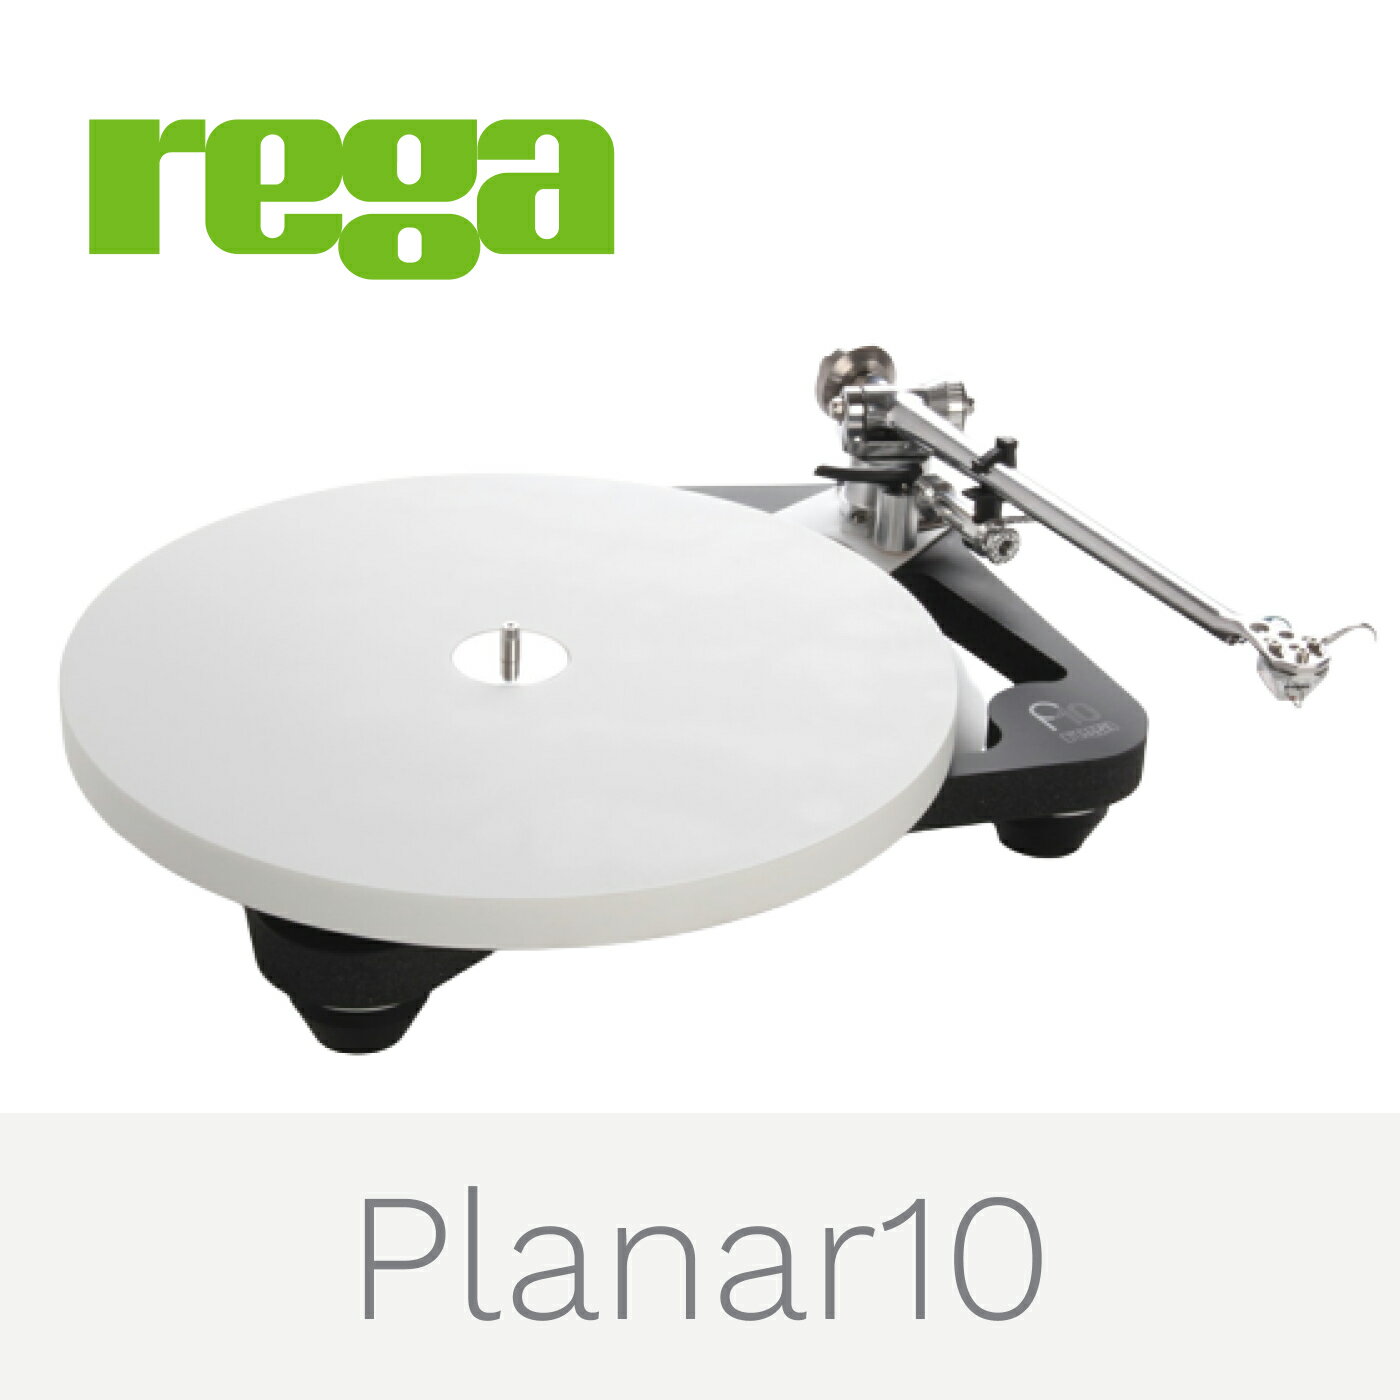 Rega Planar 10 レコードプレーヤー レガ アナログプレーヤー made in England 国内正規代理店